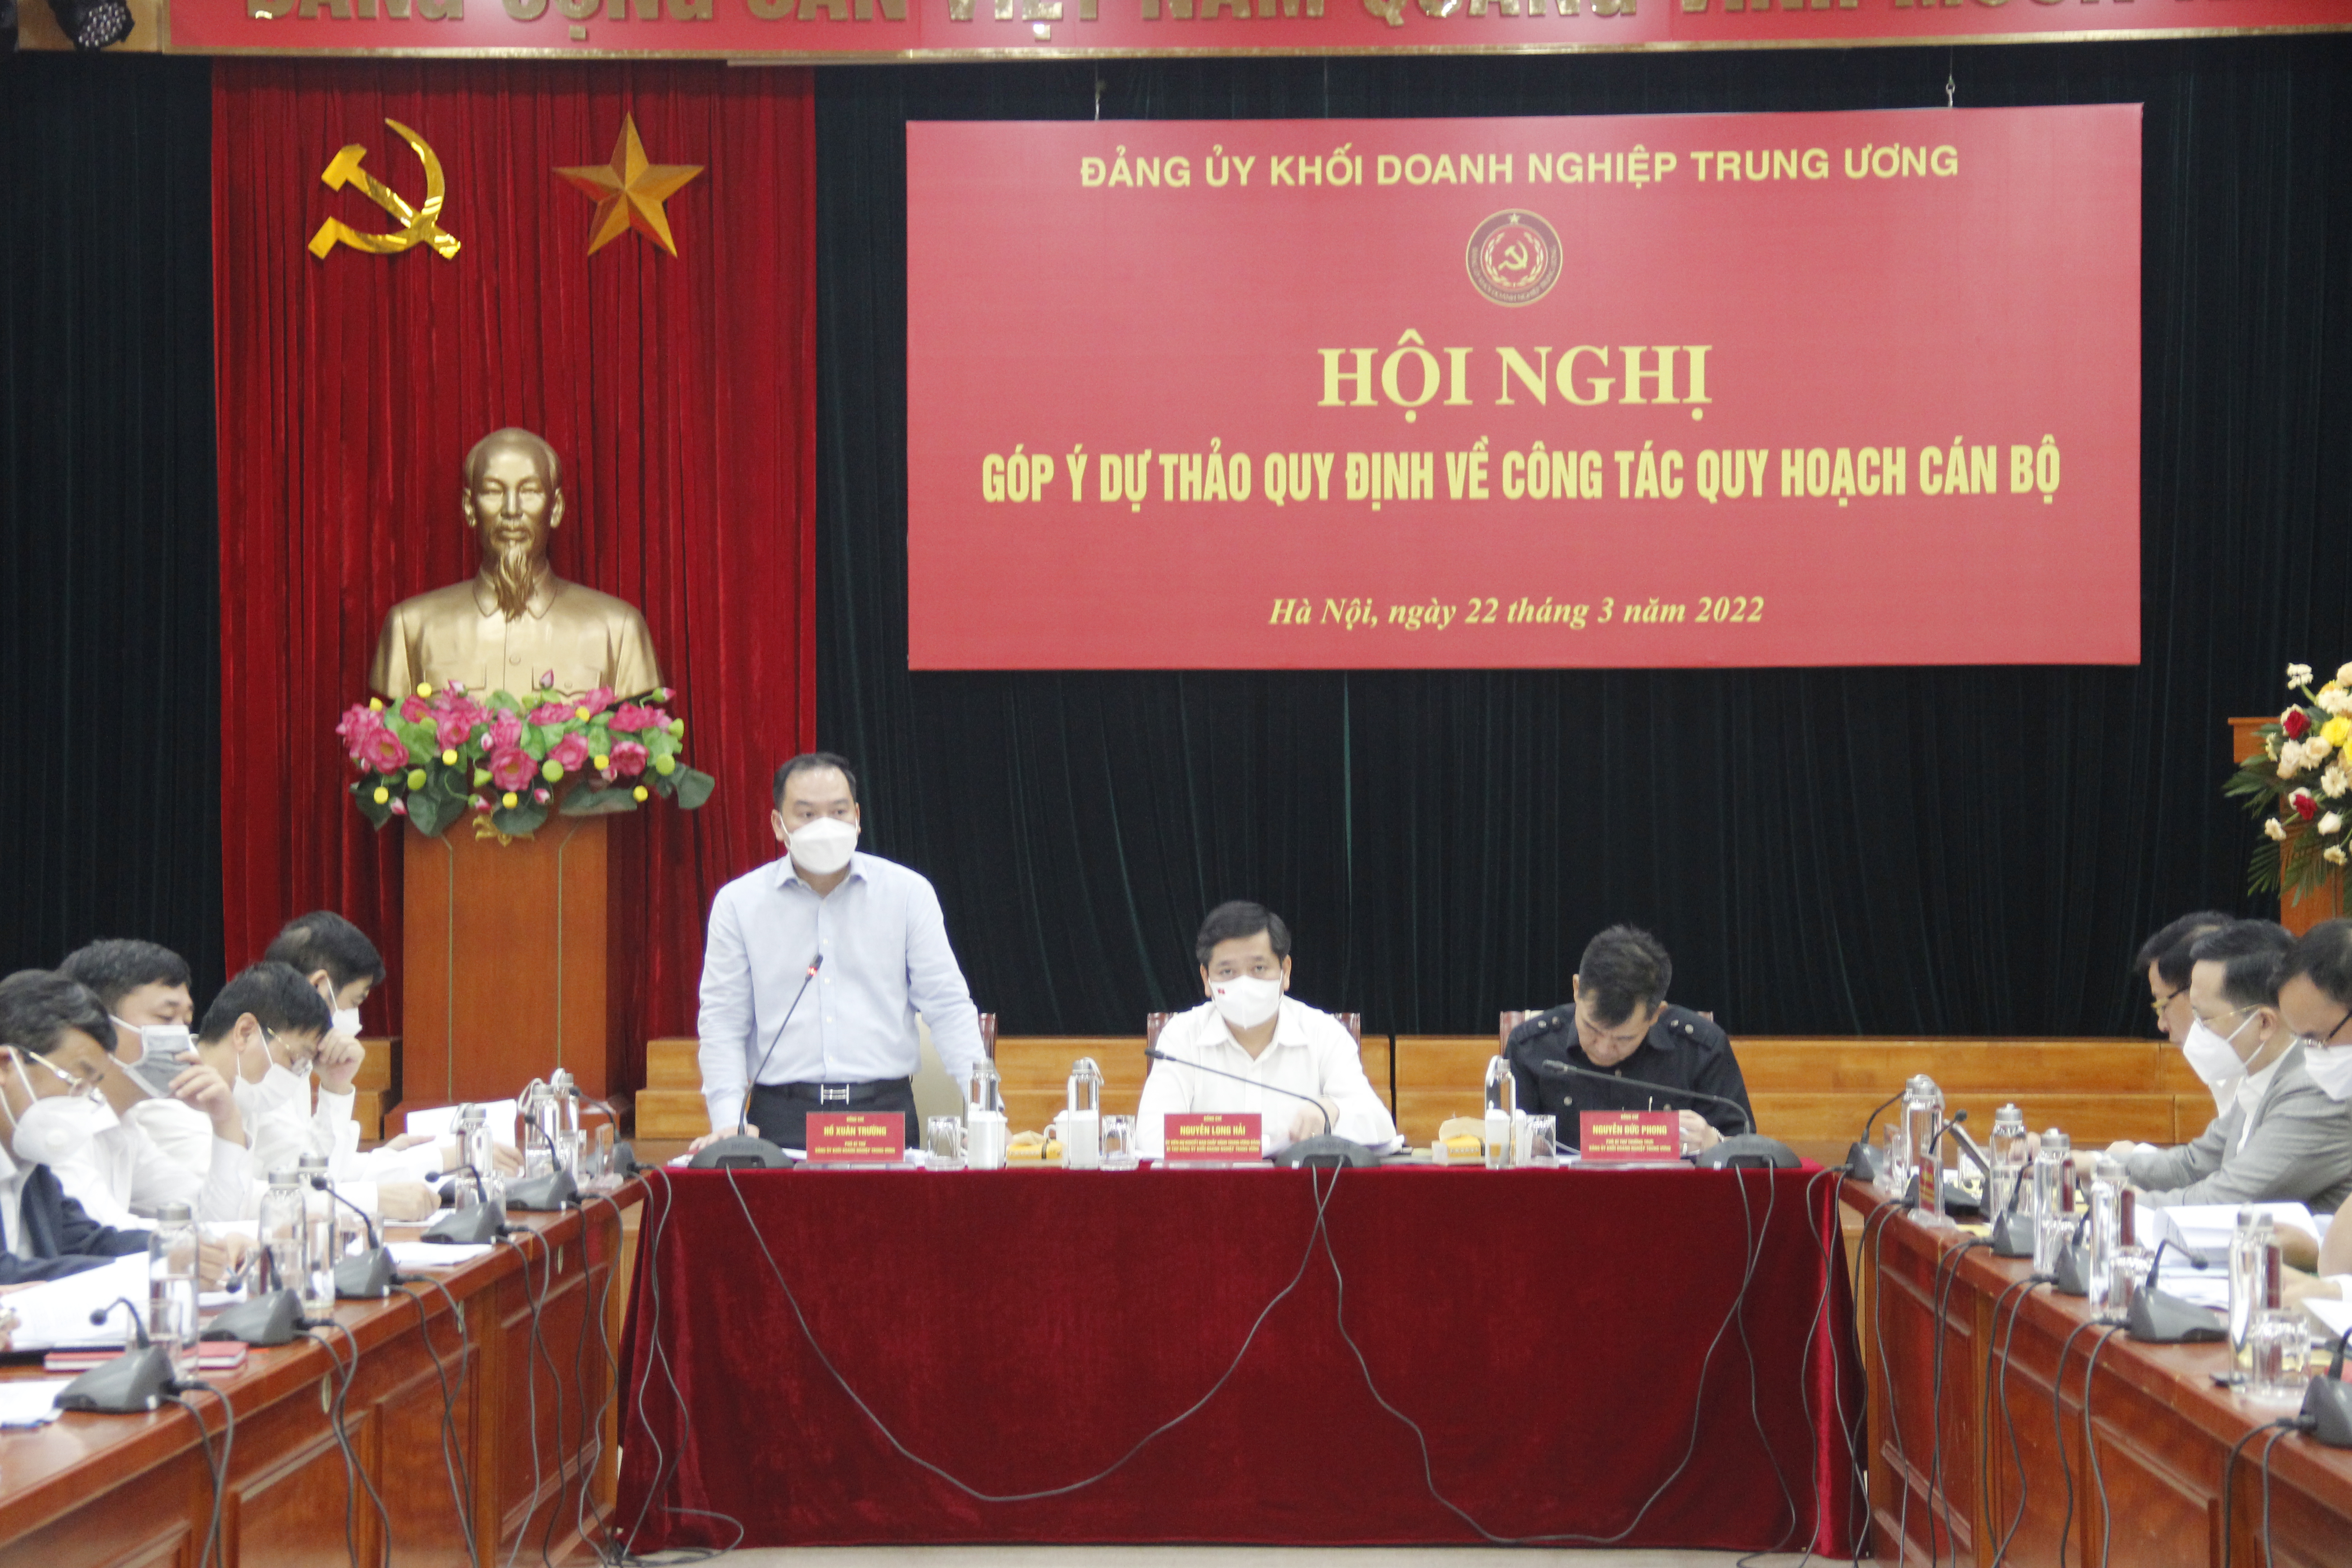 Đồng chí Hồ Xuân Trường, Phó Bí thư Đảng ủy Khối phát biểu tại Hội nghị.